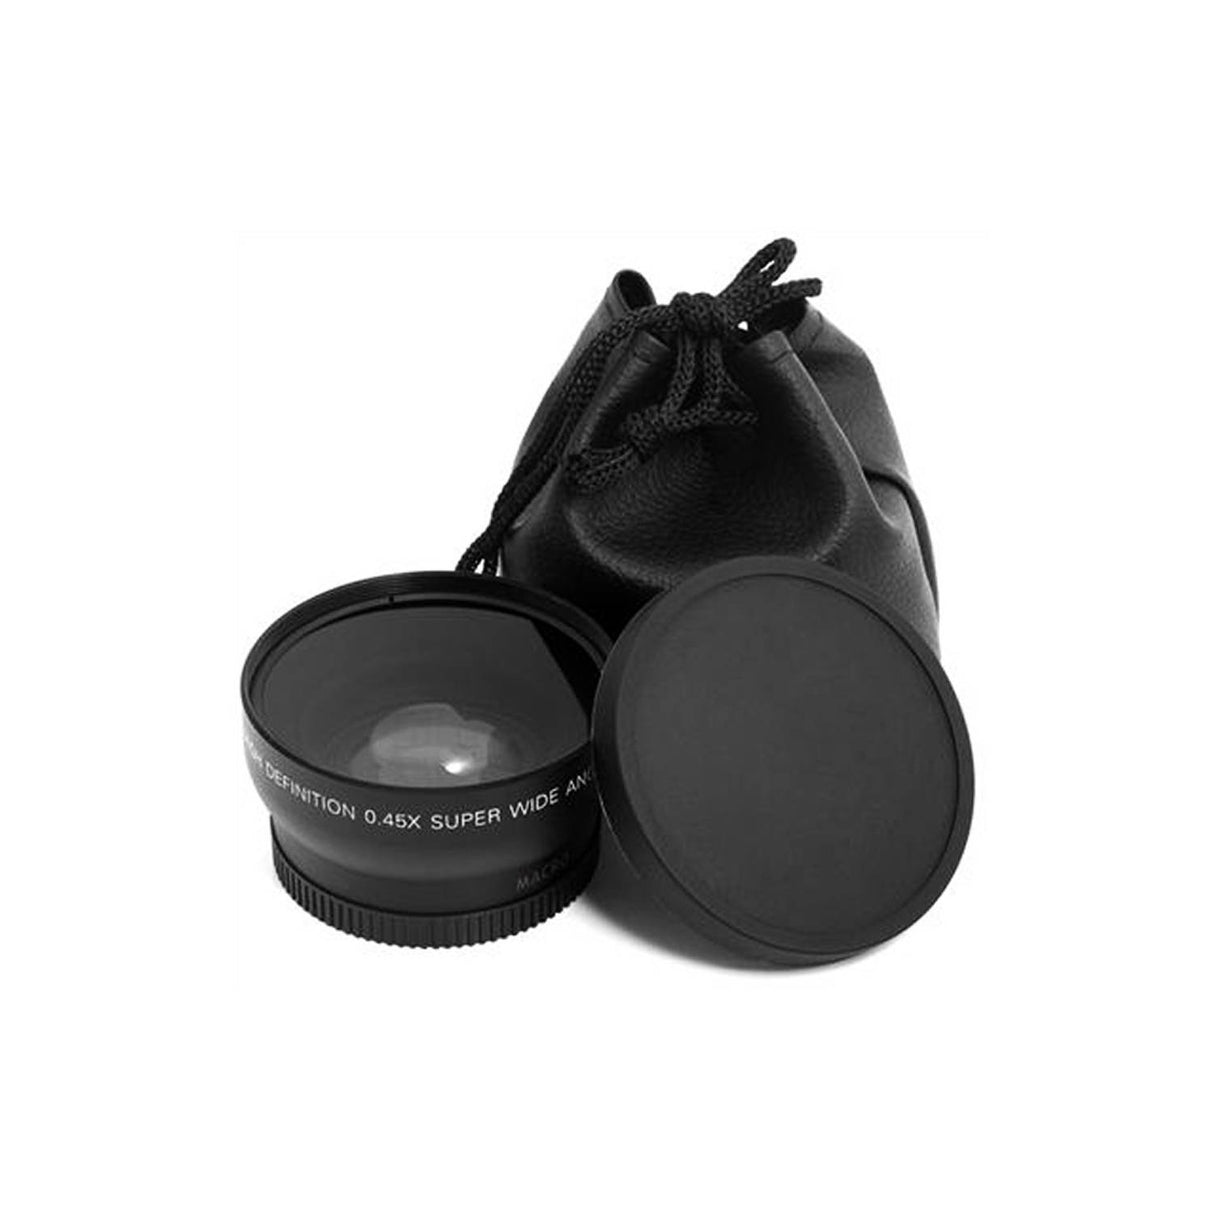 lente gran angular hd 52mm 0.45x con lente macro para camara dslr canon nikon sony pentax 52mm djl